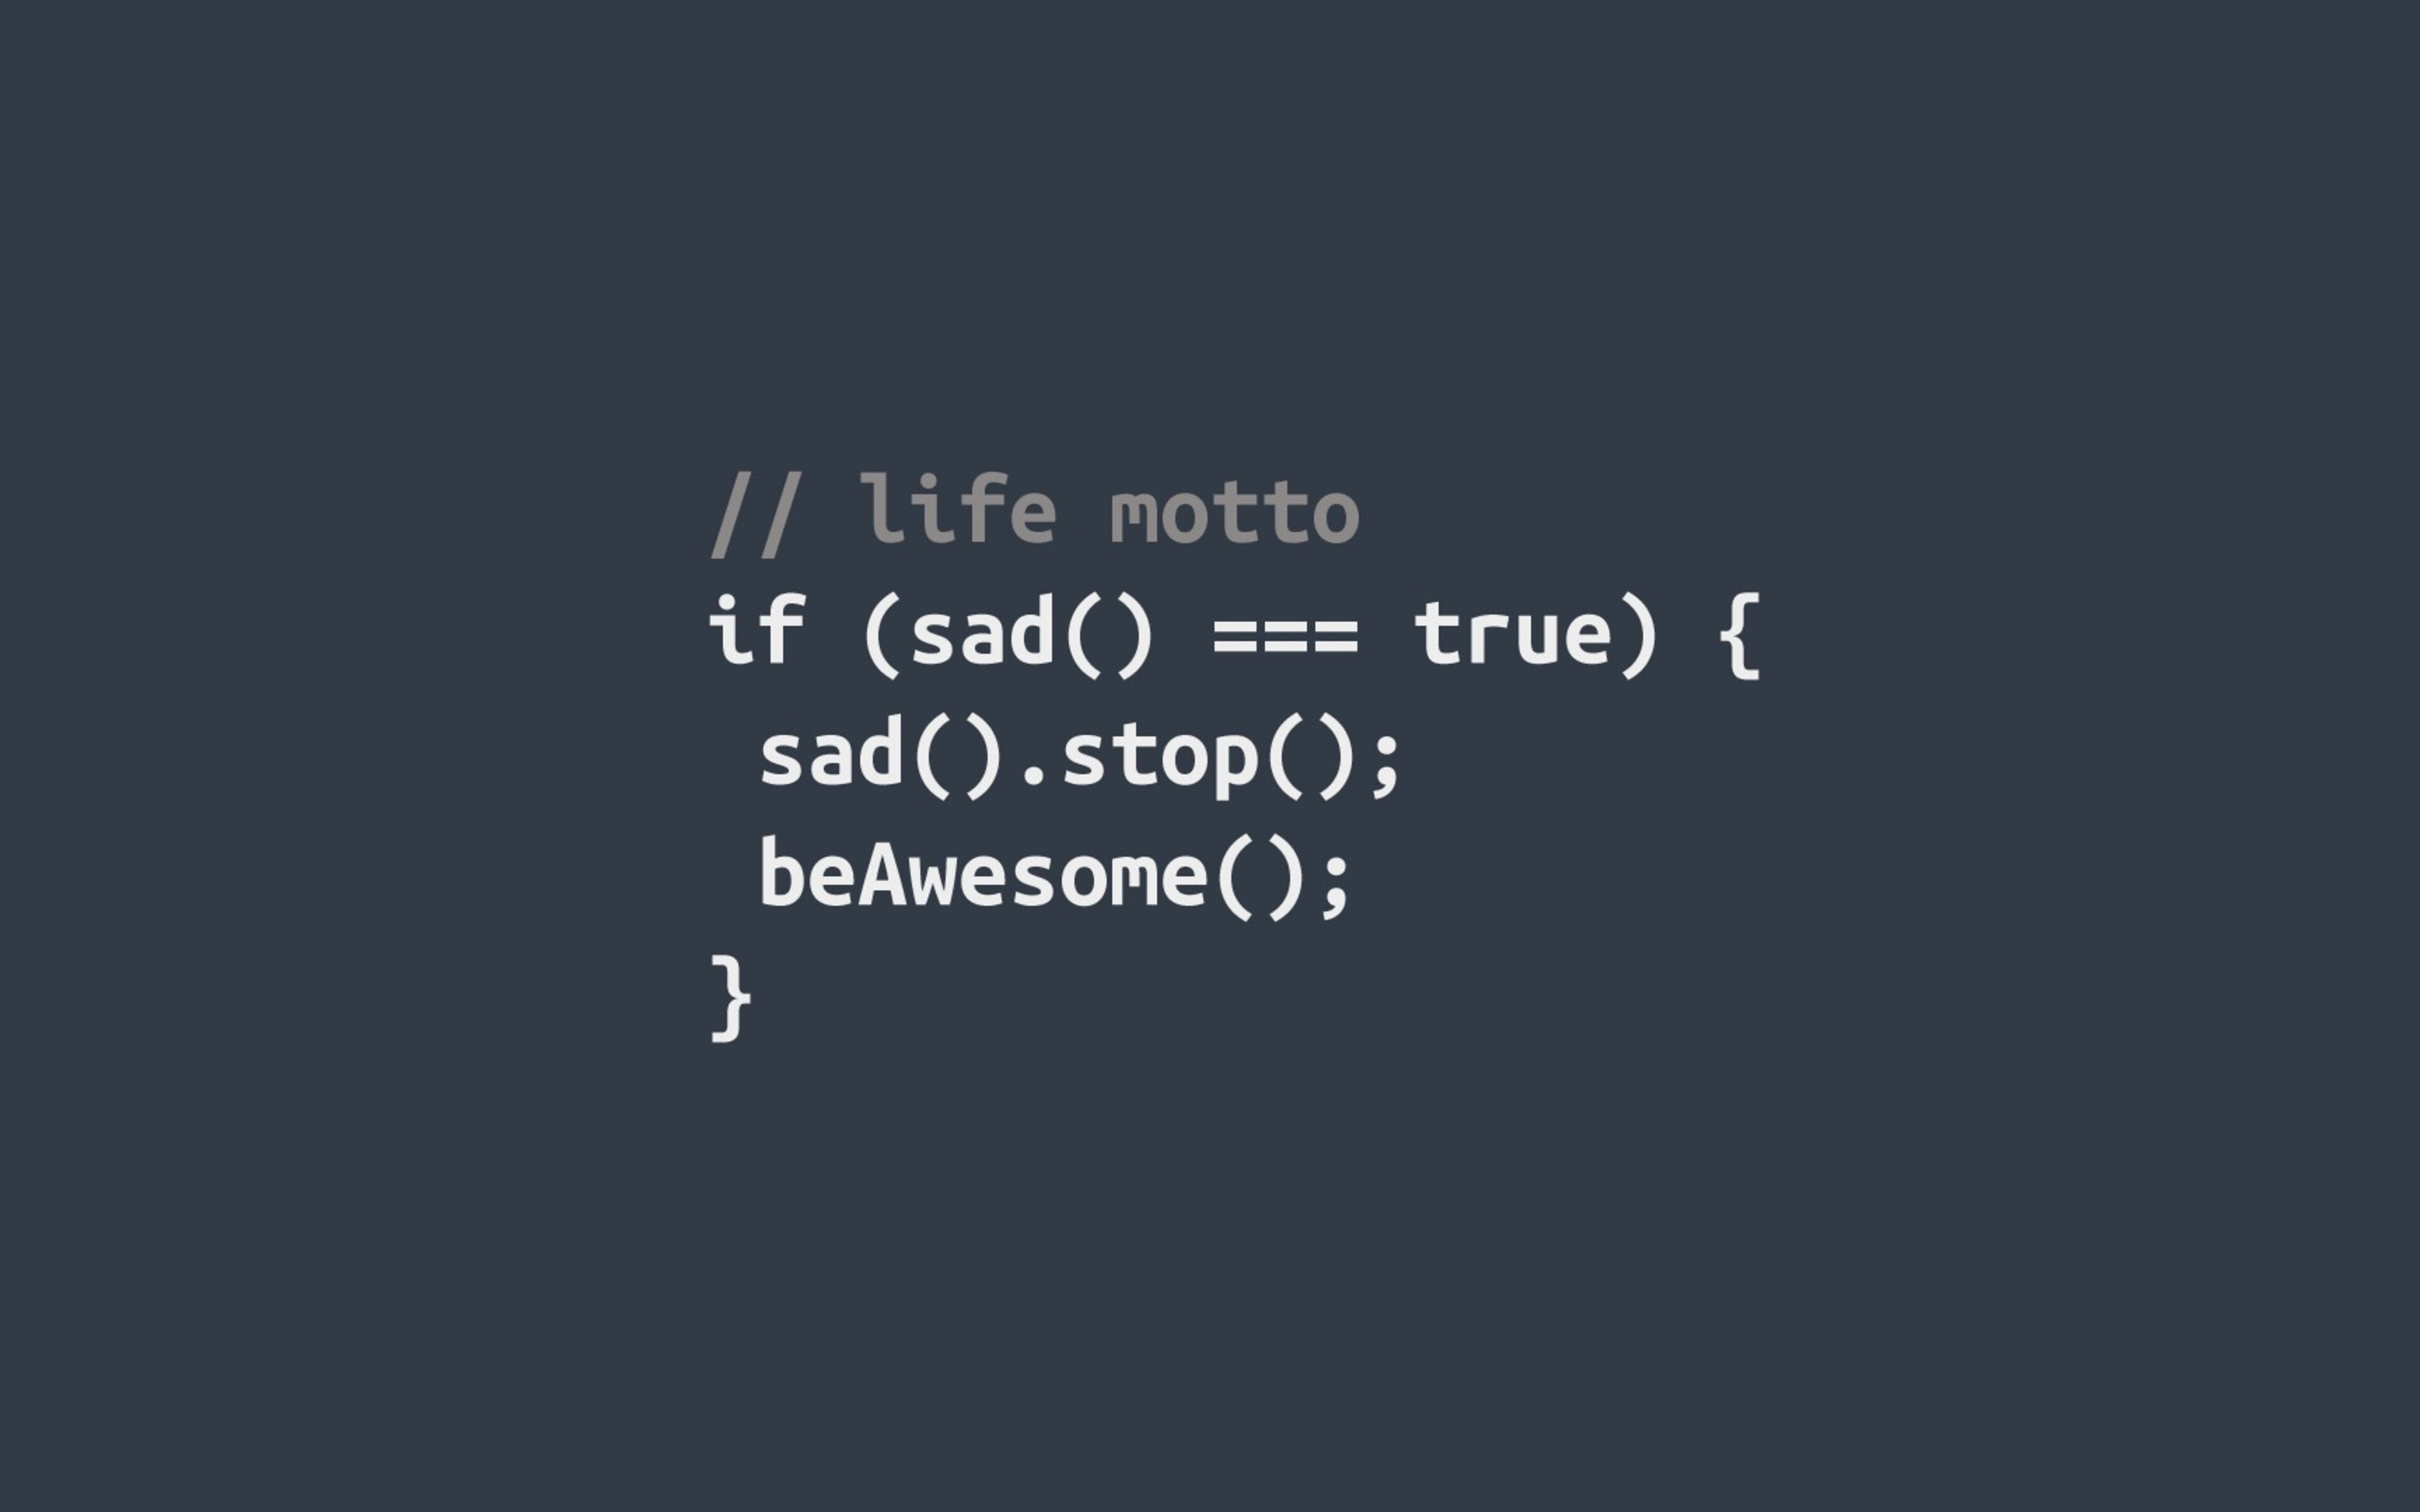 Fun code